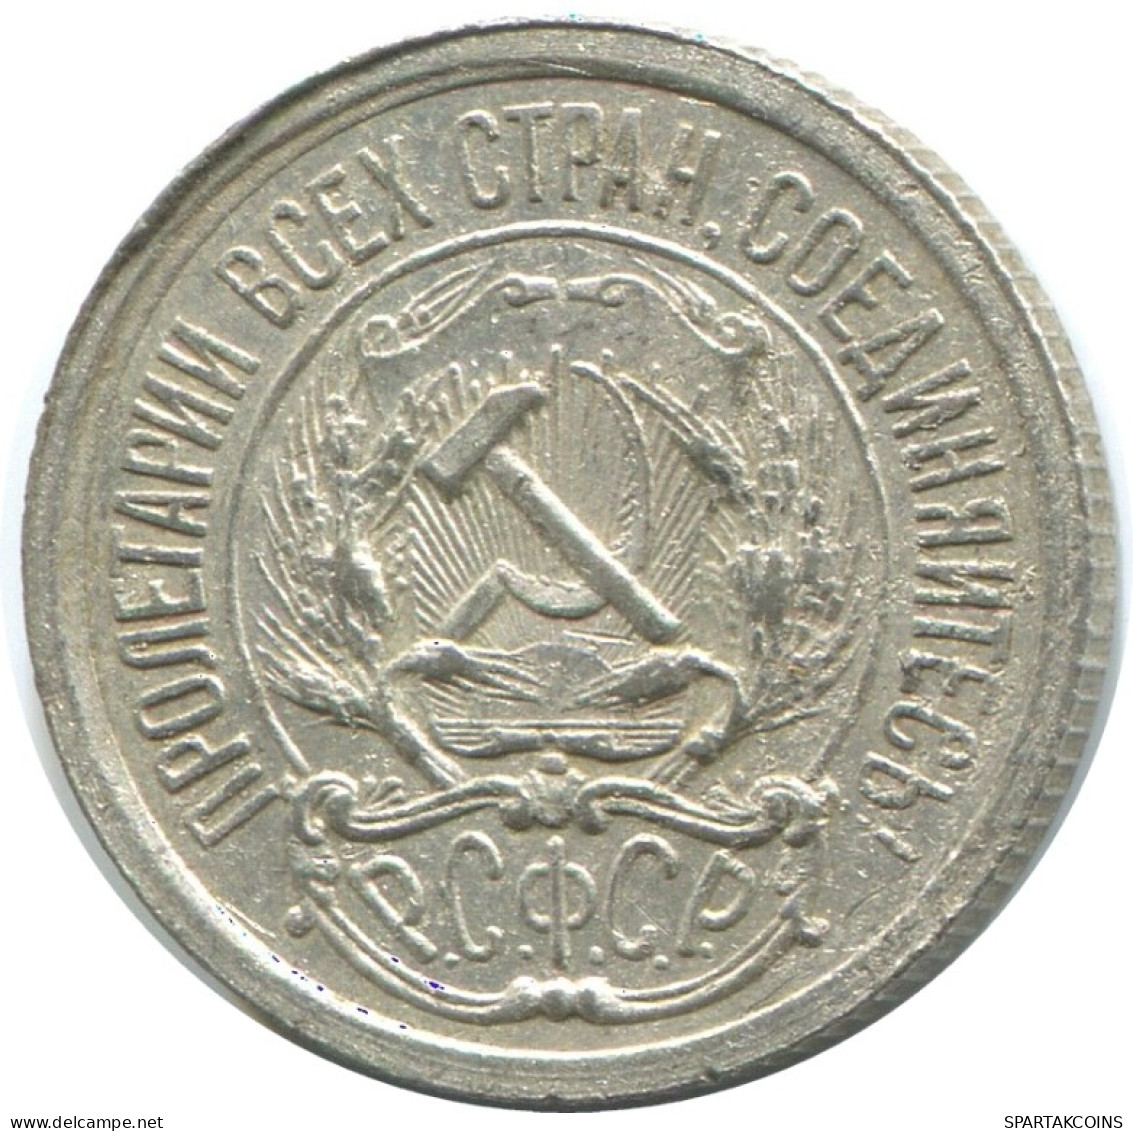 10 KOPEKS 1923 RUSSLAND RUSSIA RSFSR SILBER Münze HIGH GRADE #AE941.4.D.A - Russland